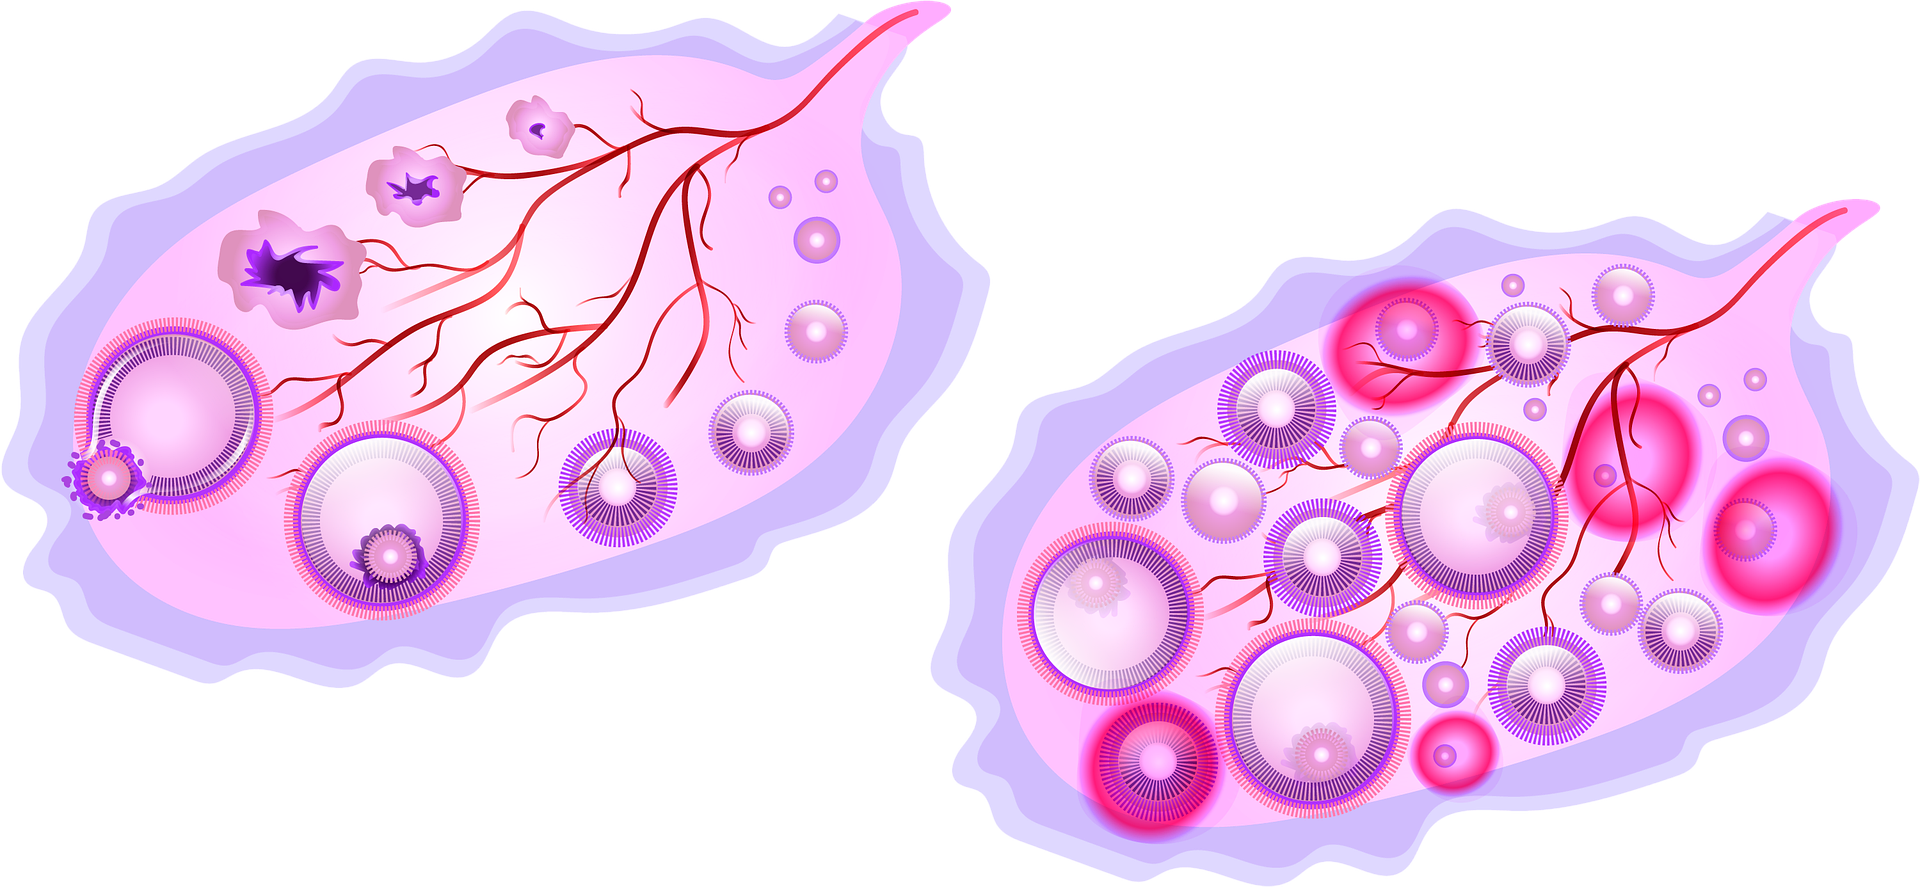 الخلايا التي تحاط بمواد صلبة مكونة من الفسفور والكالسيوم هي خلايا عظمية -  الأمل نيوز